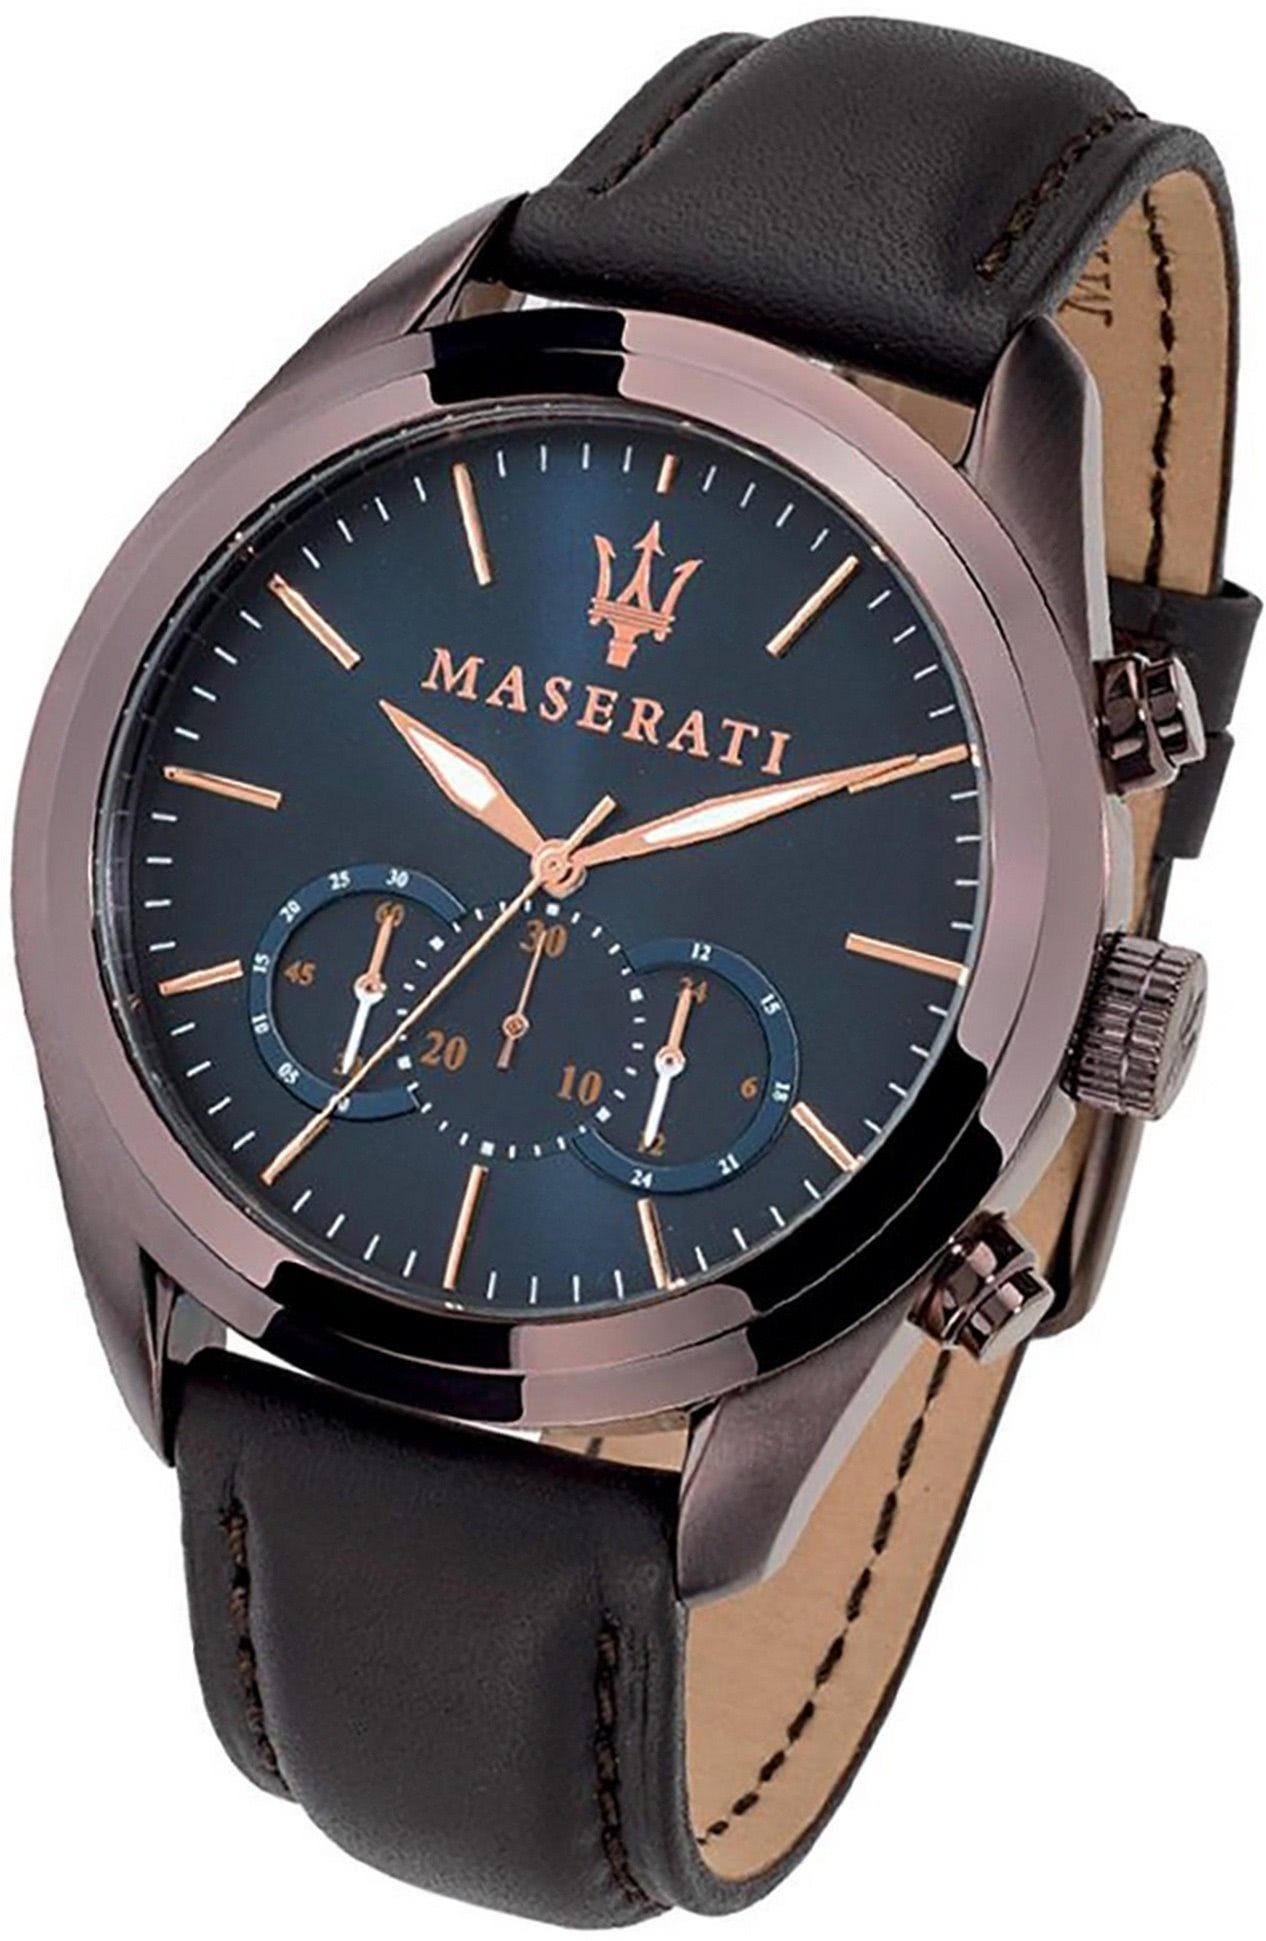 Chronograph (ca. Herrenuhr Leder Armband-Uhr, groß 55x45mm) MASERATI Gehäuse, rundes Maserati blau Lederarmband,